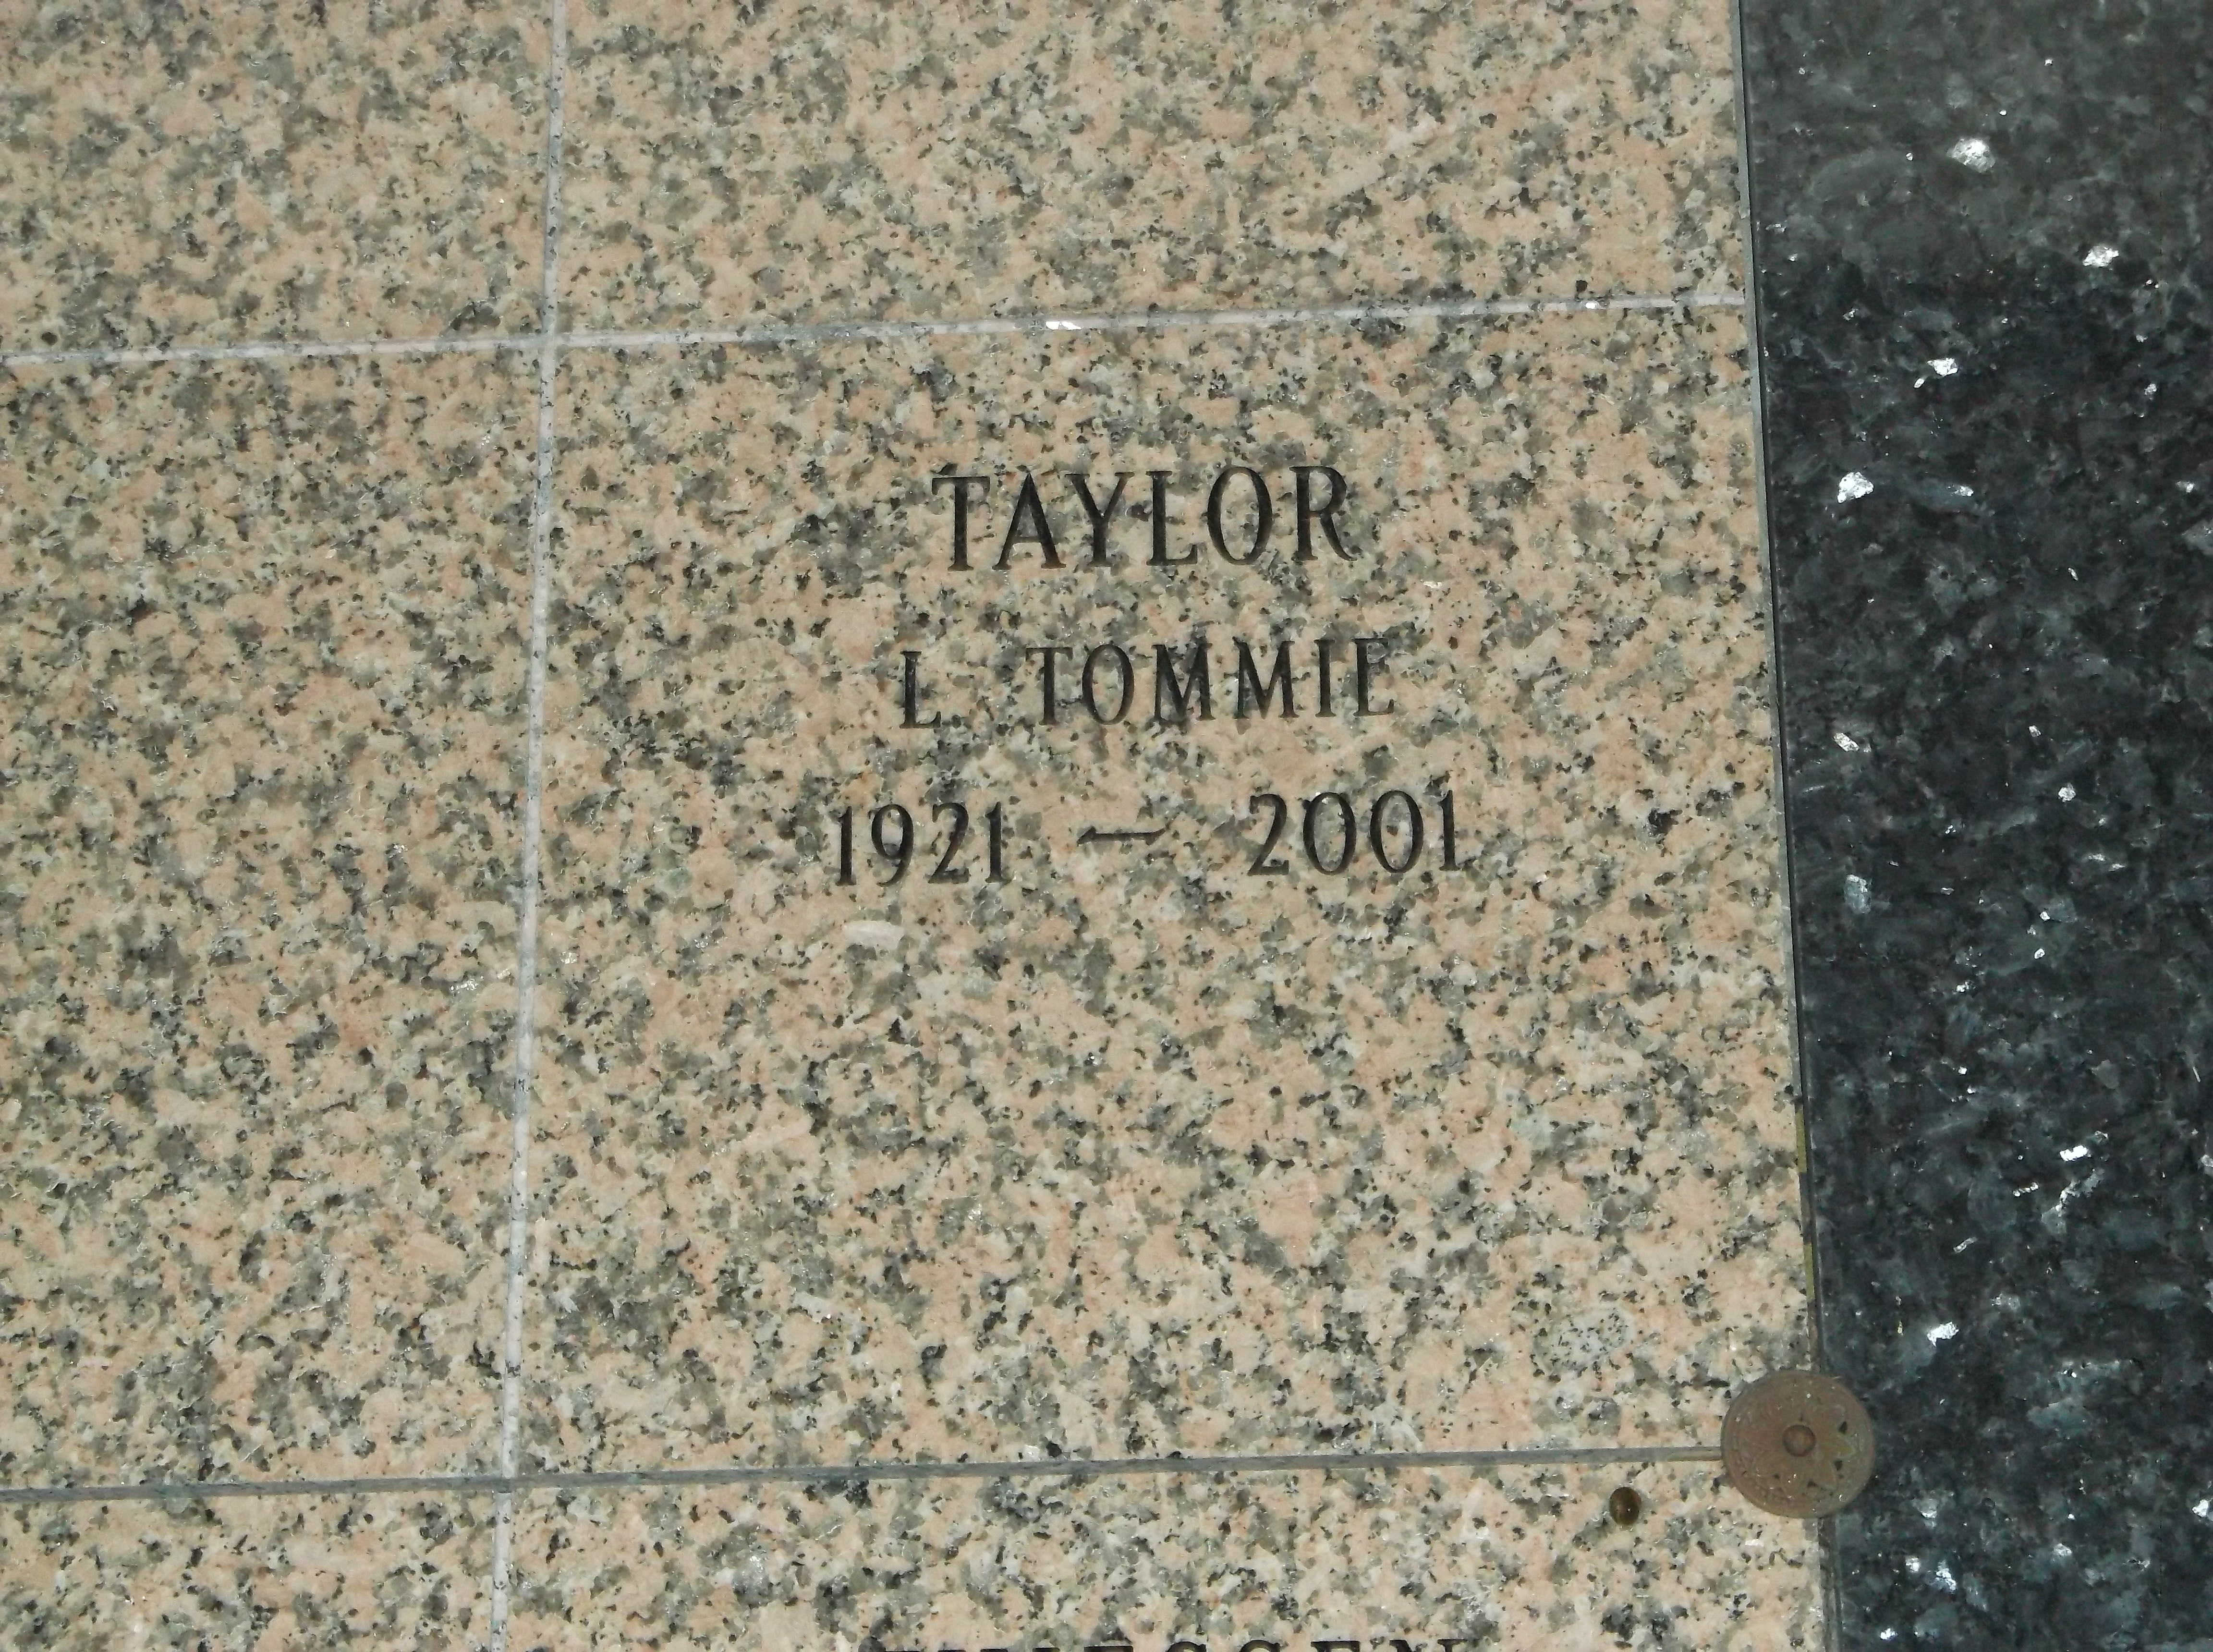 L Tommie Taylor